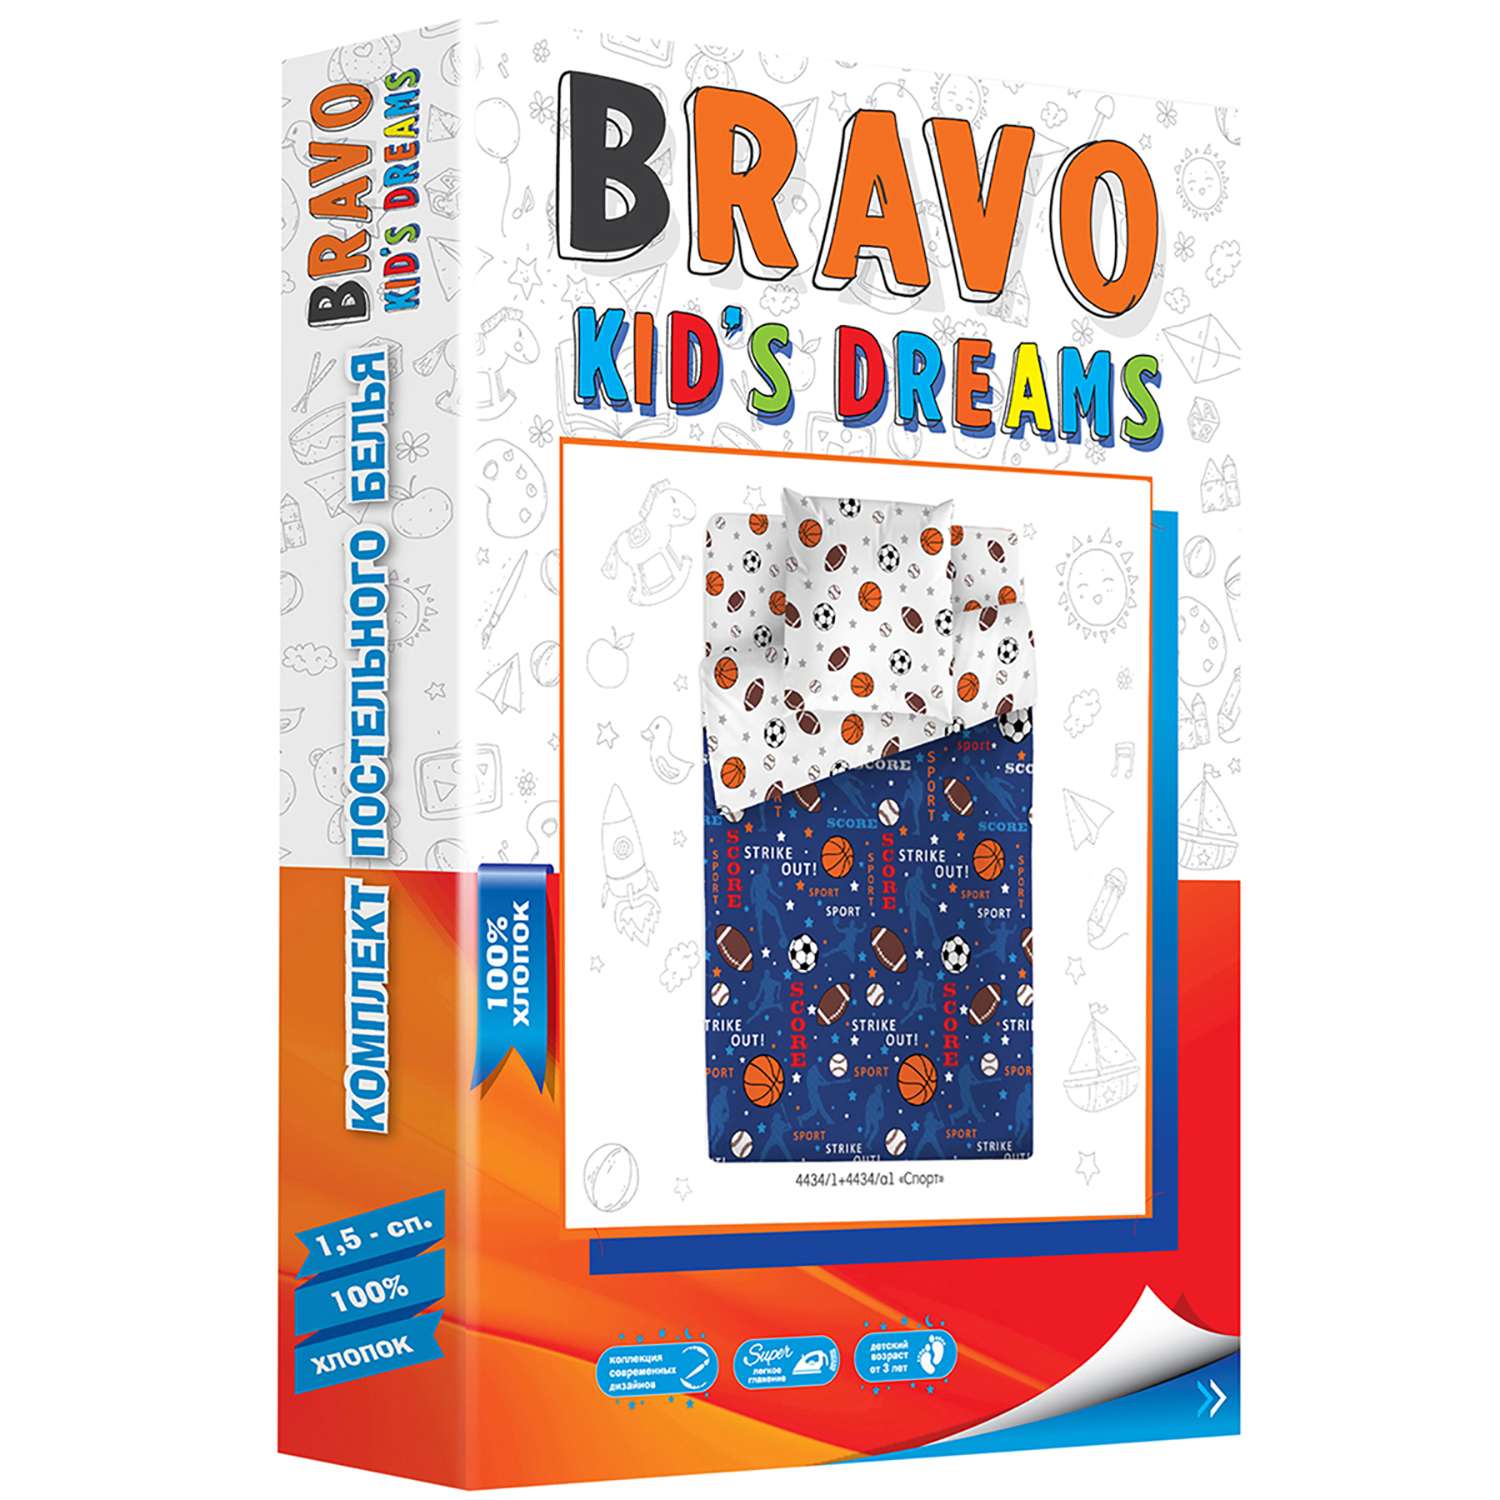 Комплект постельного белья BRAVO kids dreams Спорт 1.5 3 предмета - фото 3